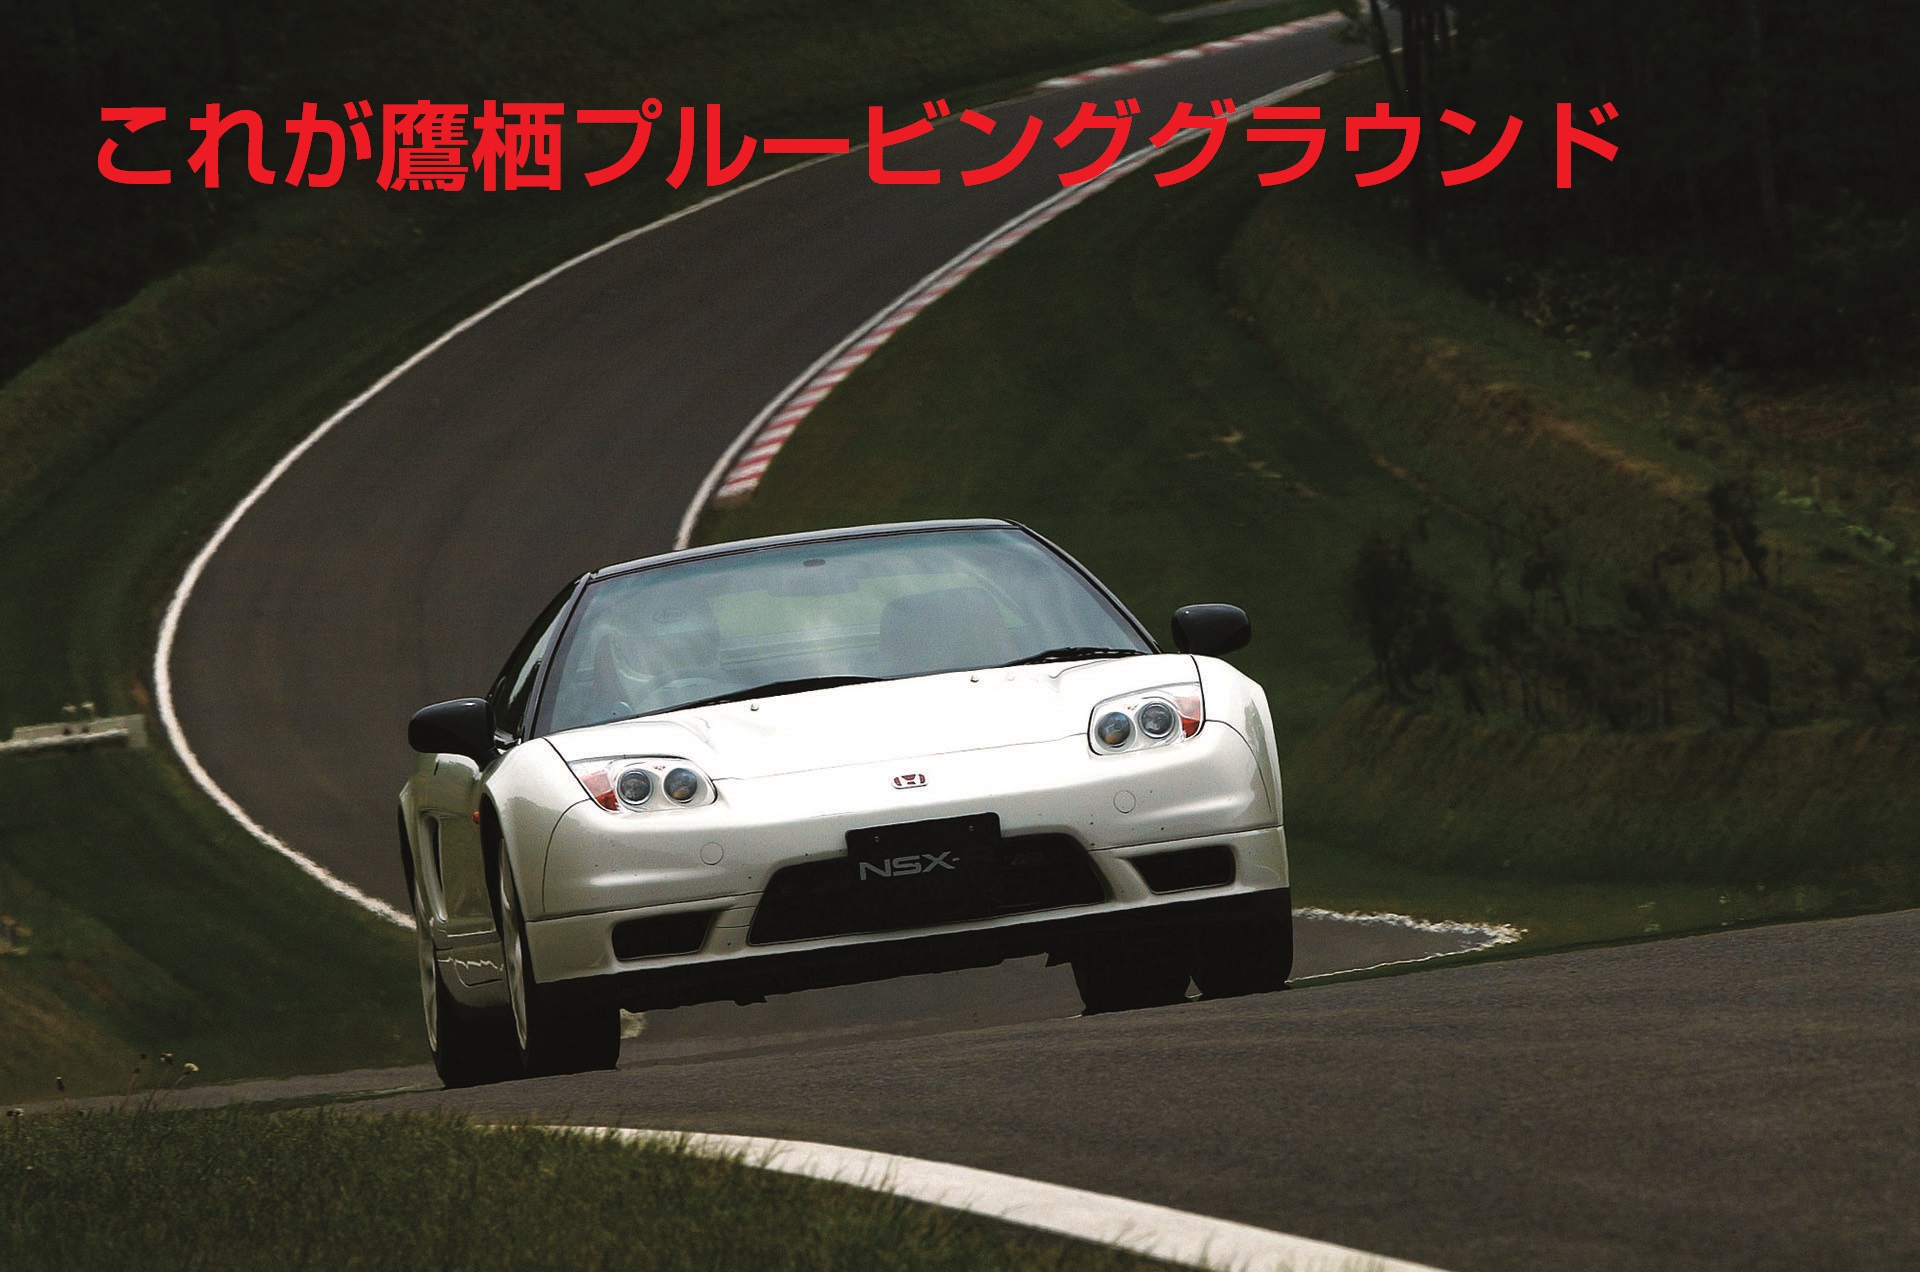 Honda nsx r. Honda NSX-R 2002. Хонда NSX-R 2005. Honda NSX 2002. 2002 Acura/Honda NSX.